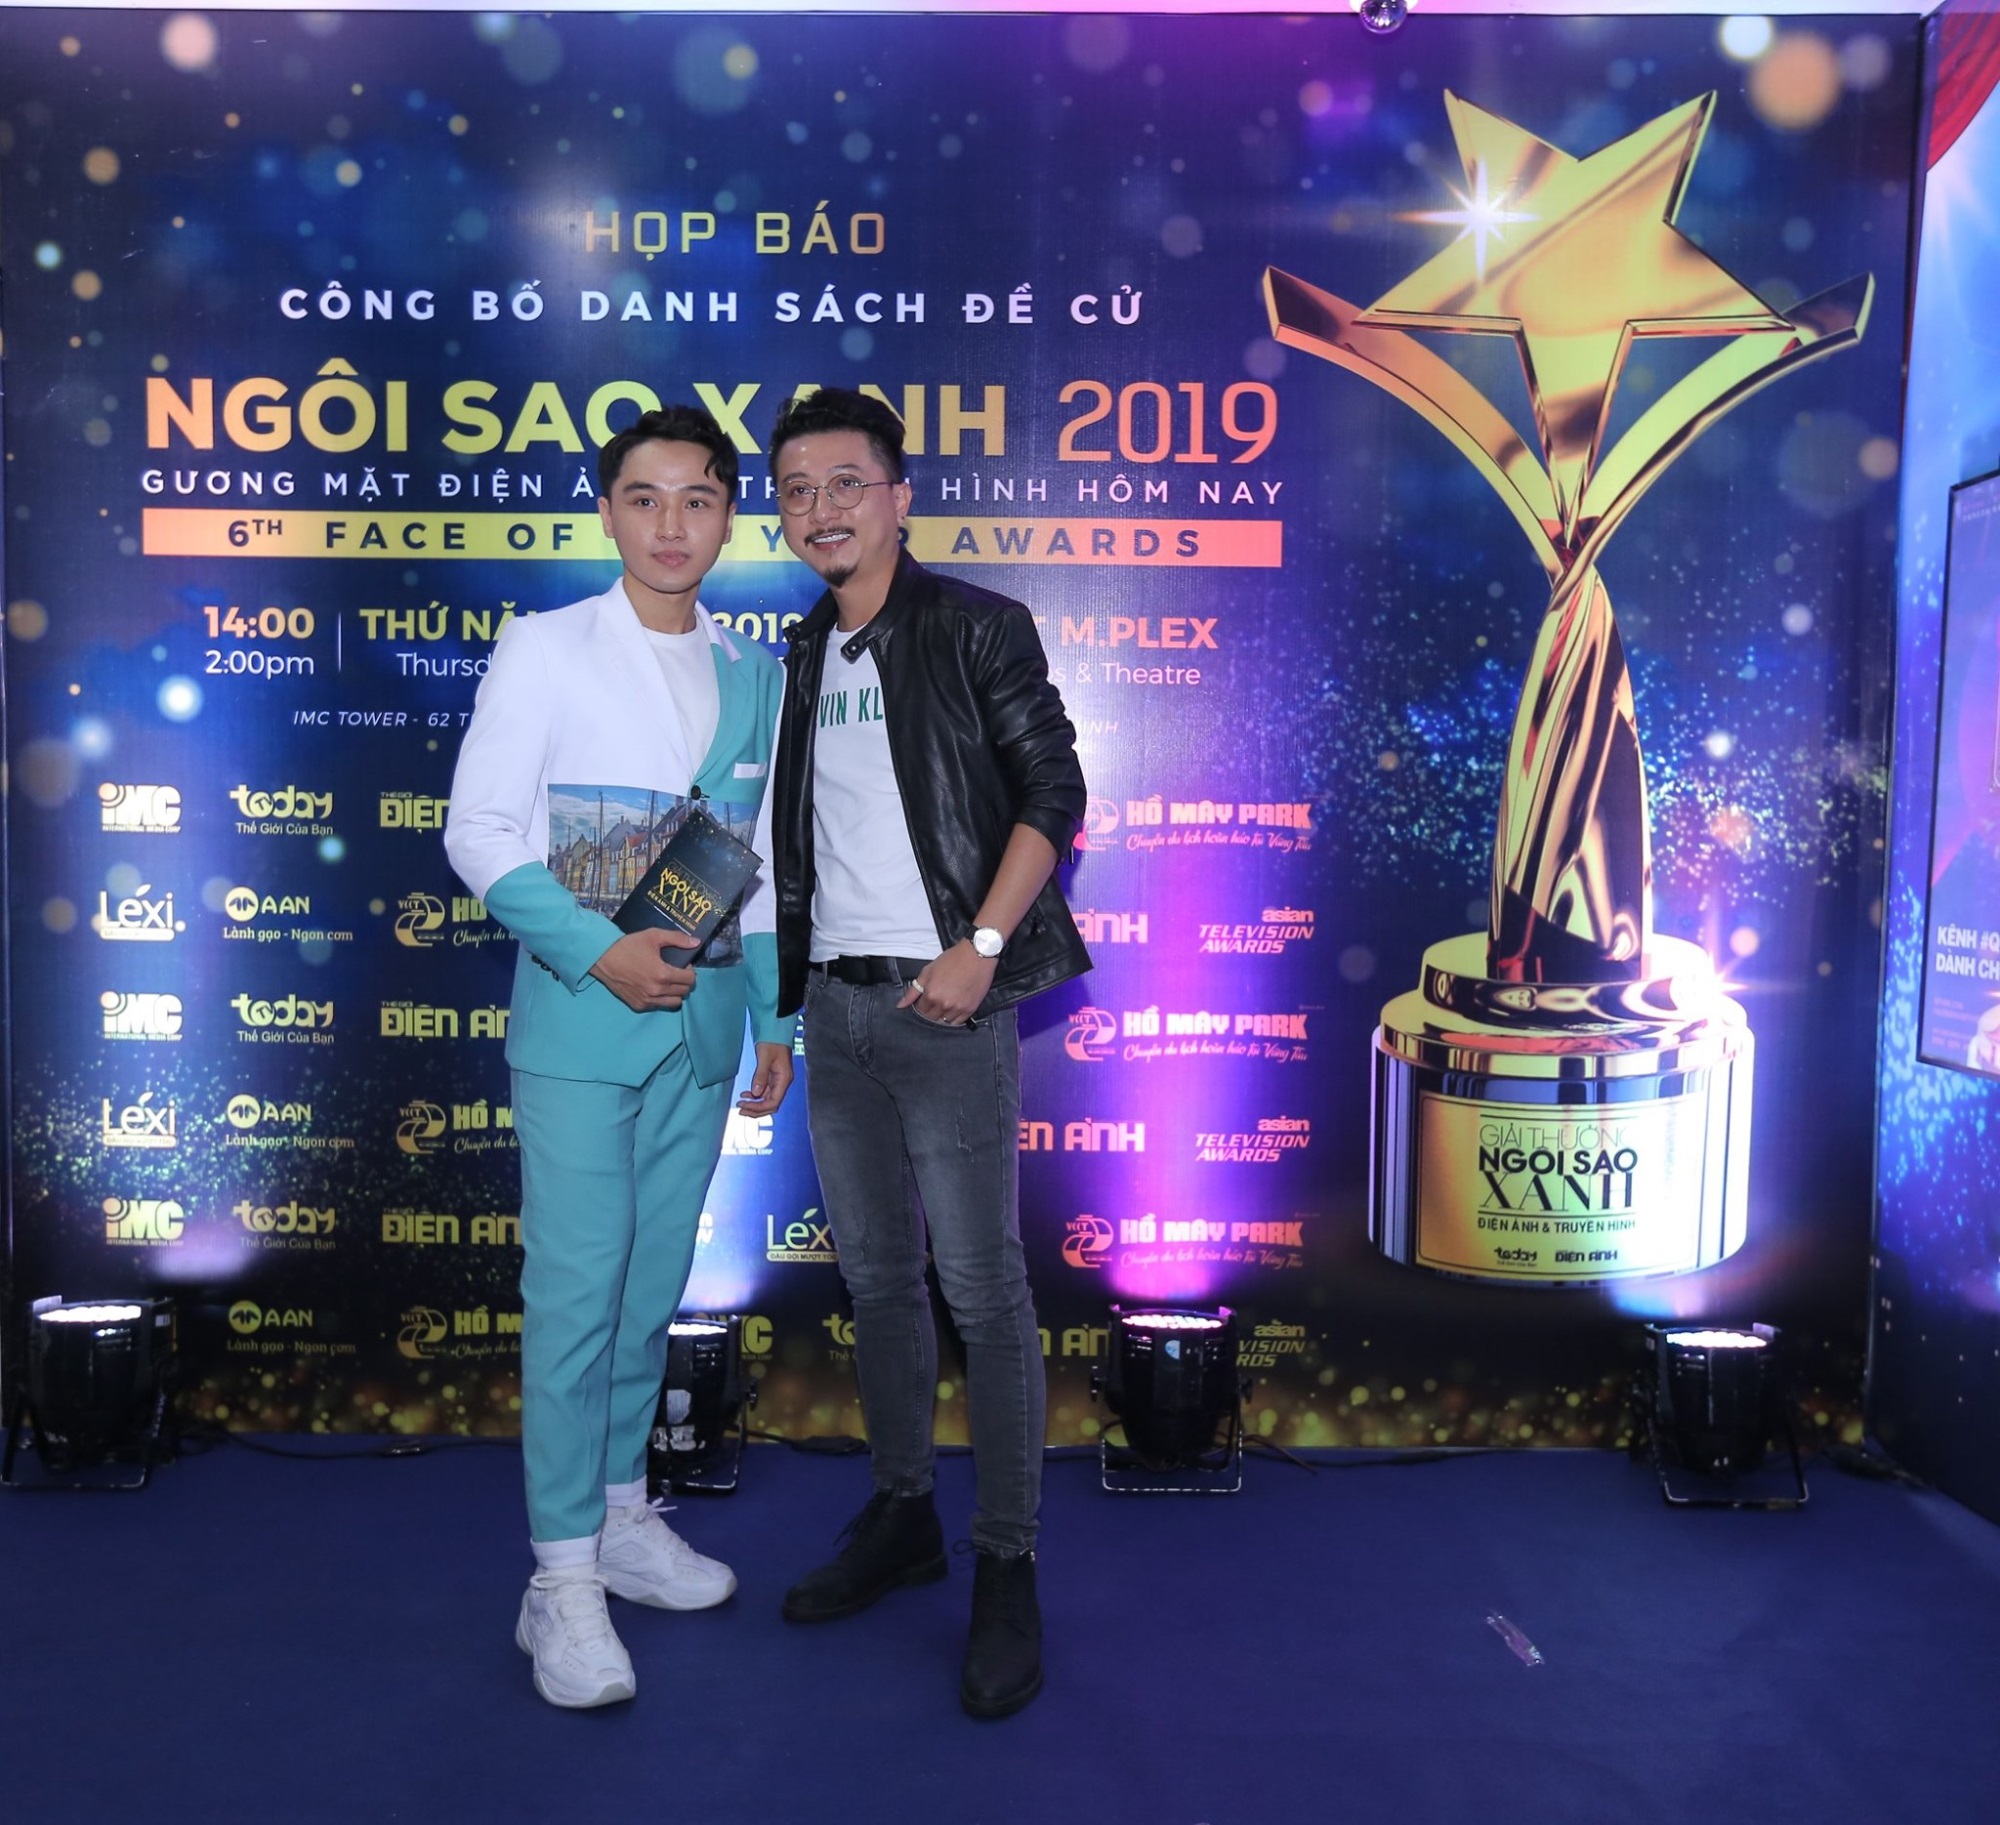 Nghệ sĩ Việt Hương hạnh phúc, Hoàng Mập 'mất ngủ' khi được đề cử Ngôi Sao Xanh 2019 - Ảnh 2